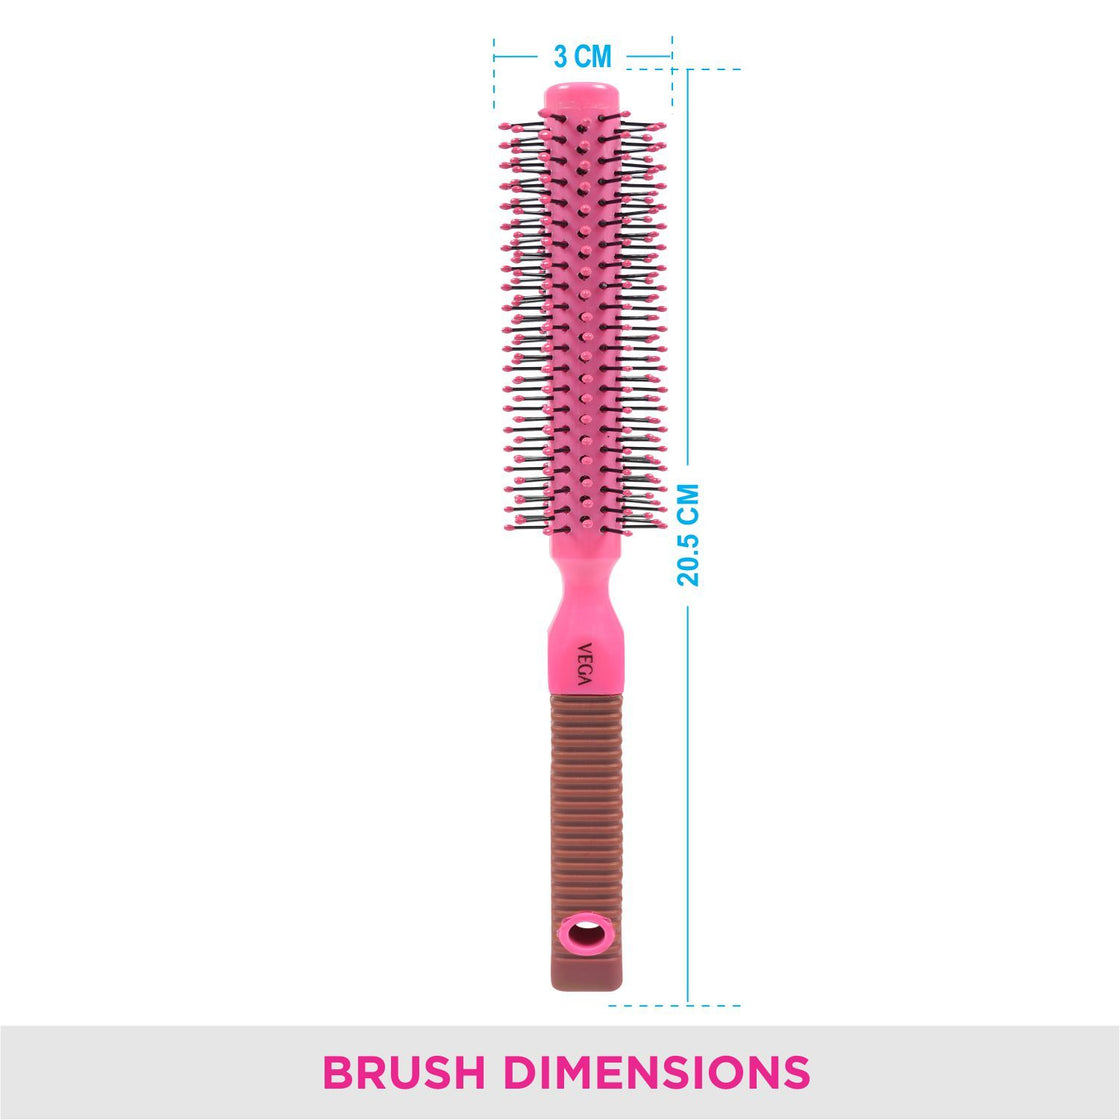 Vega R1-Rbb Round Hair Brush (Color May Vary)-5